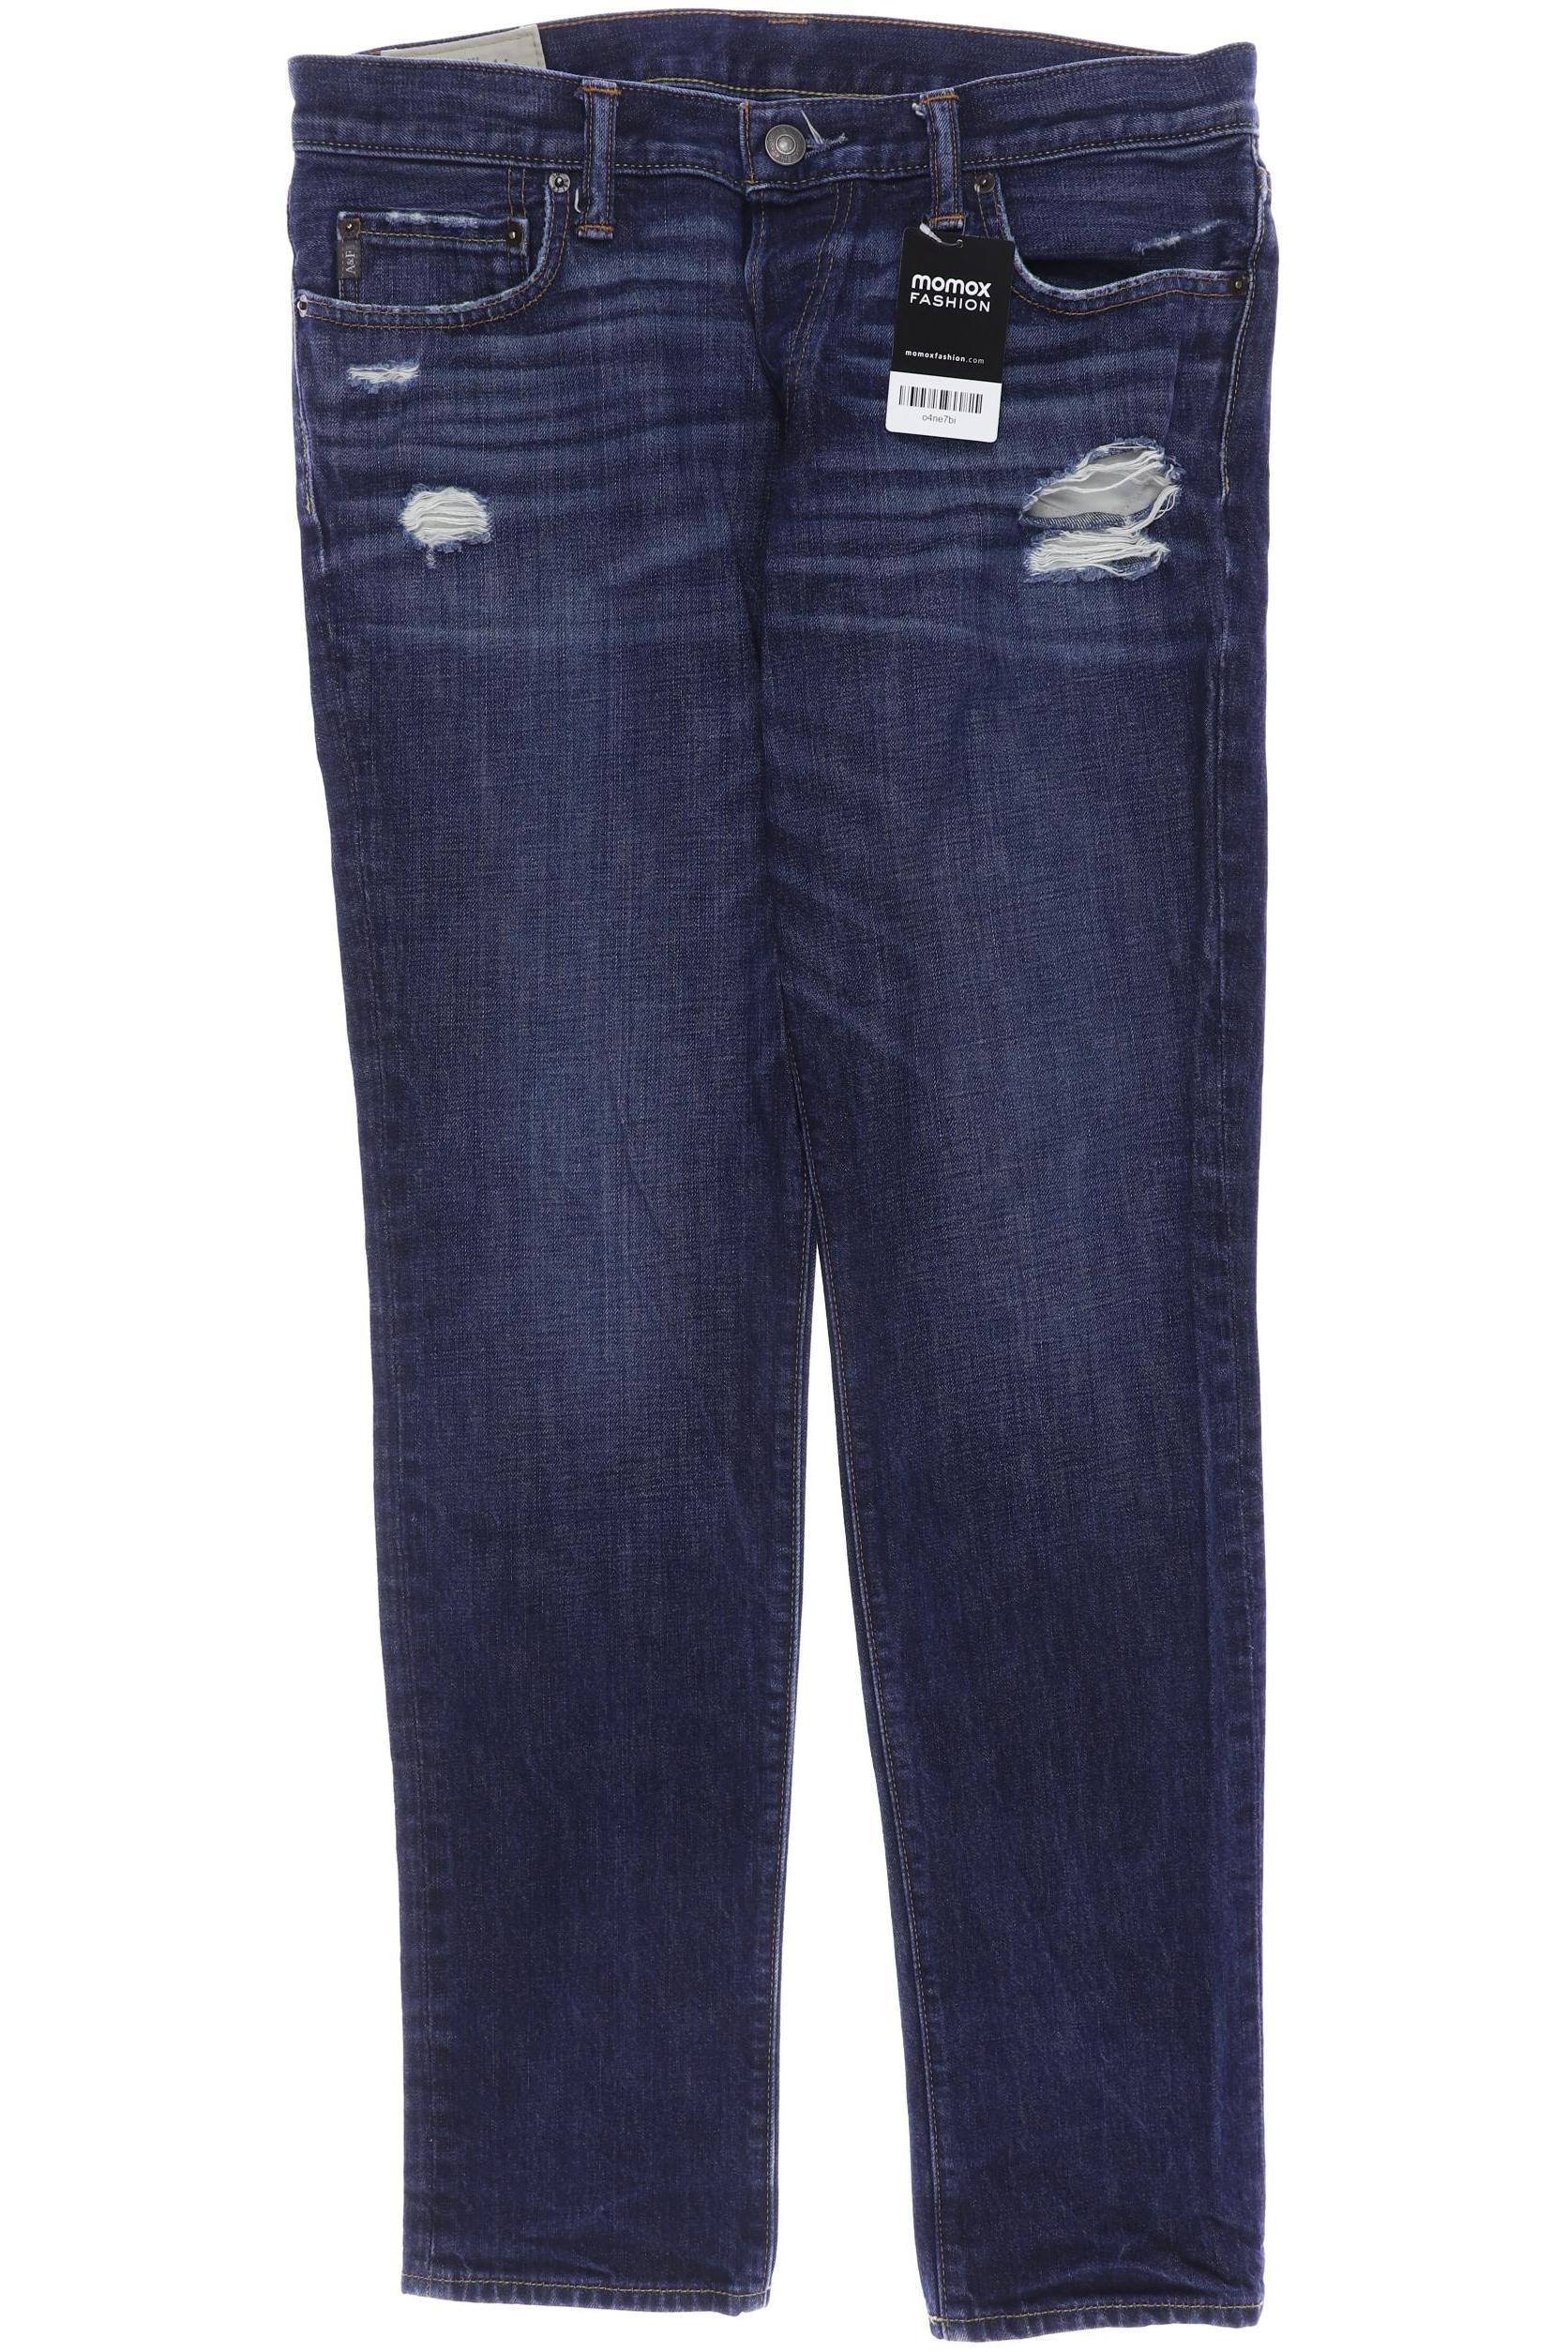 Abercrombie & Fitch Herren Jeans, marineblau von Abercrombie & Fitch